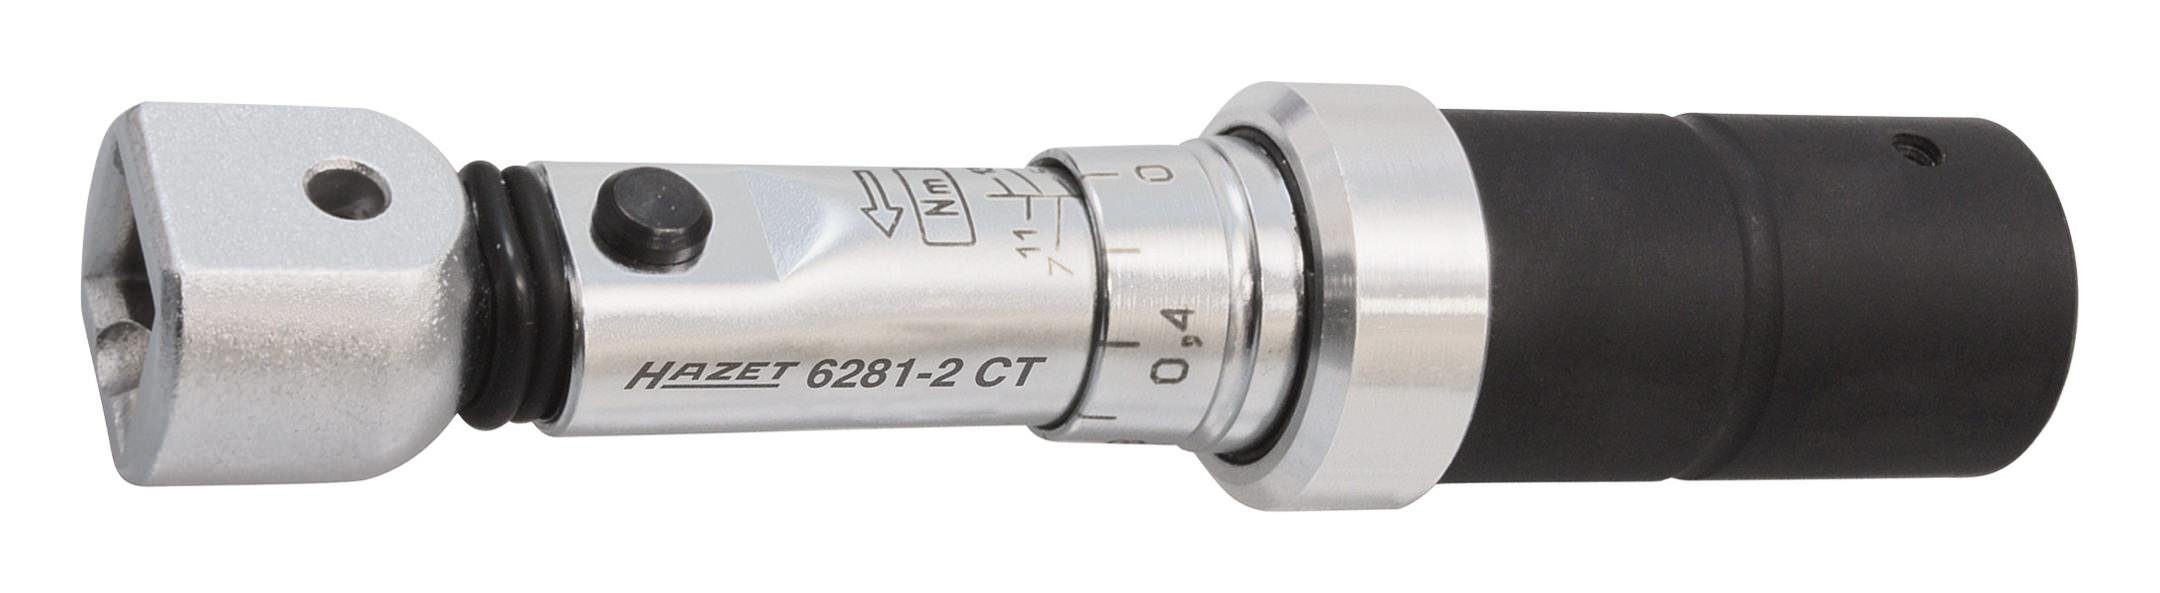 HAZET Drehmomentschlüssel, 6280-1CT 2 - 10 Nm 9 x 12 mm